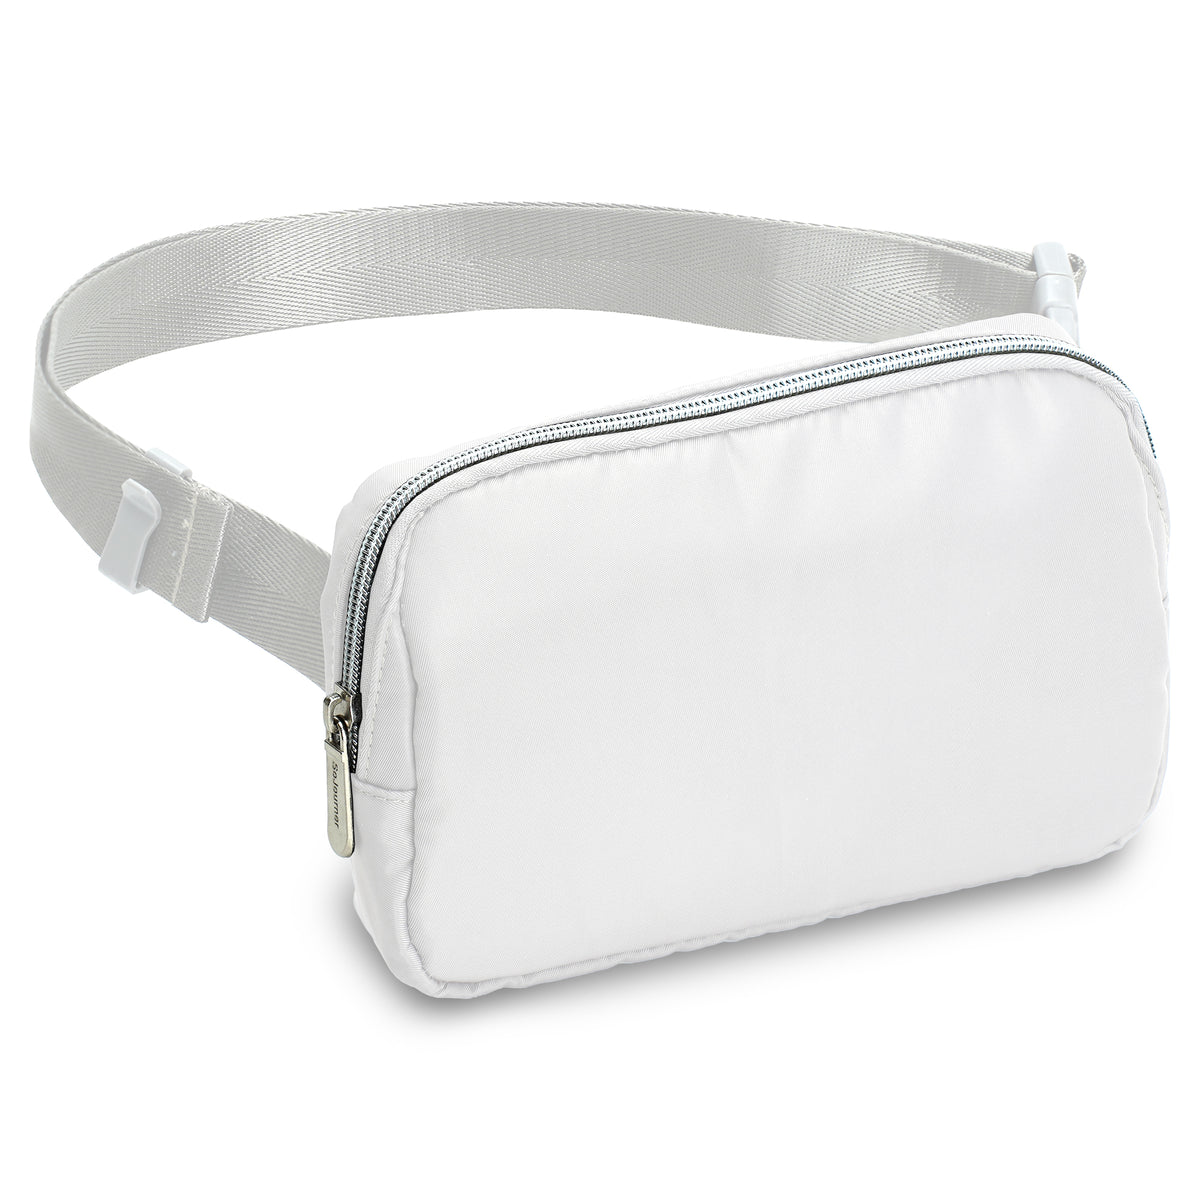 White Fanny Pack Belt Bag for Women I Cross Body Fanny Packs for Women - Crossbody Bags small Waist Bag Men